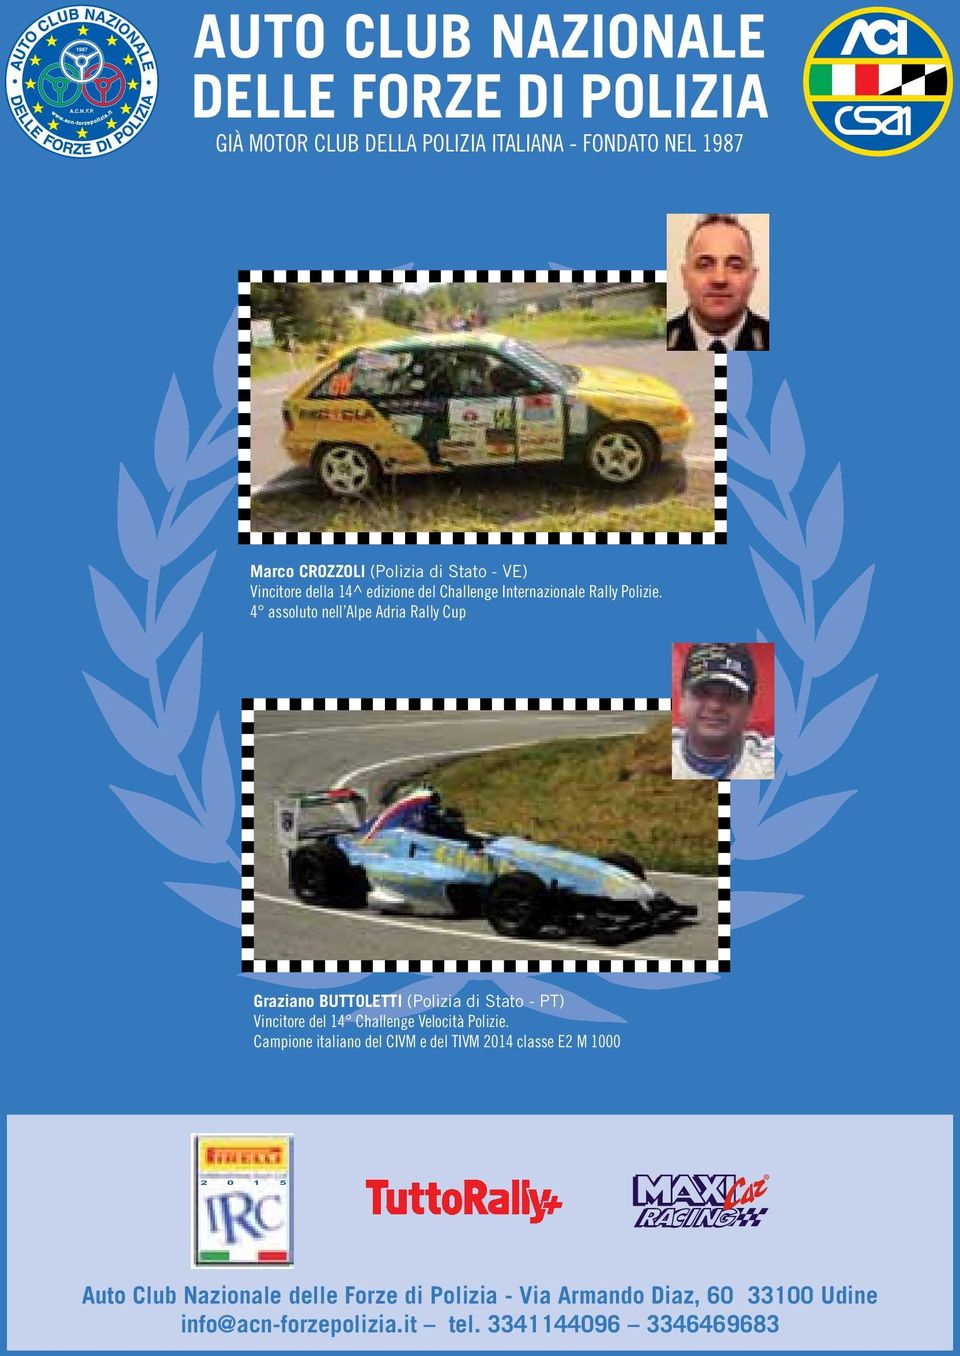 VE) Vincitore della 14^ edizione del Challenge Internazionale Rally Polizie.